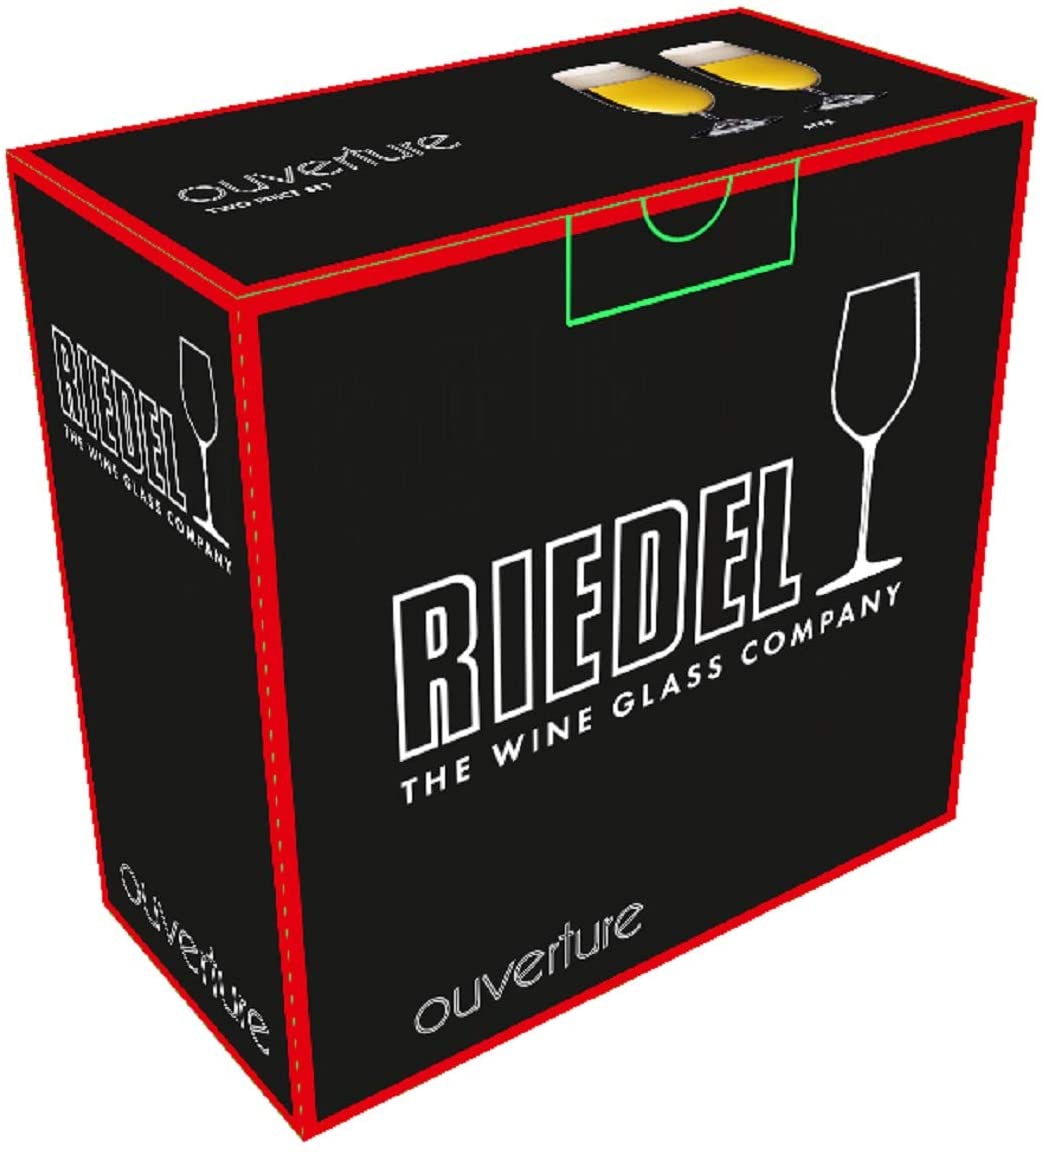 RIEDEL(リーデル) オヴァチュア ビアーの商品画像サムネ5 